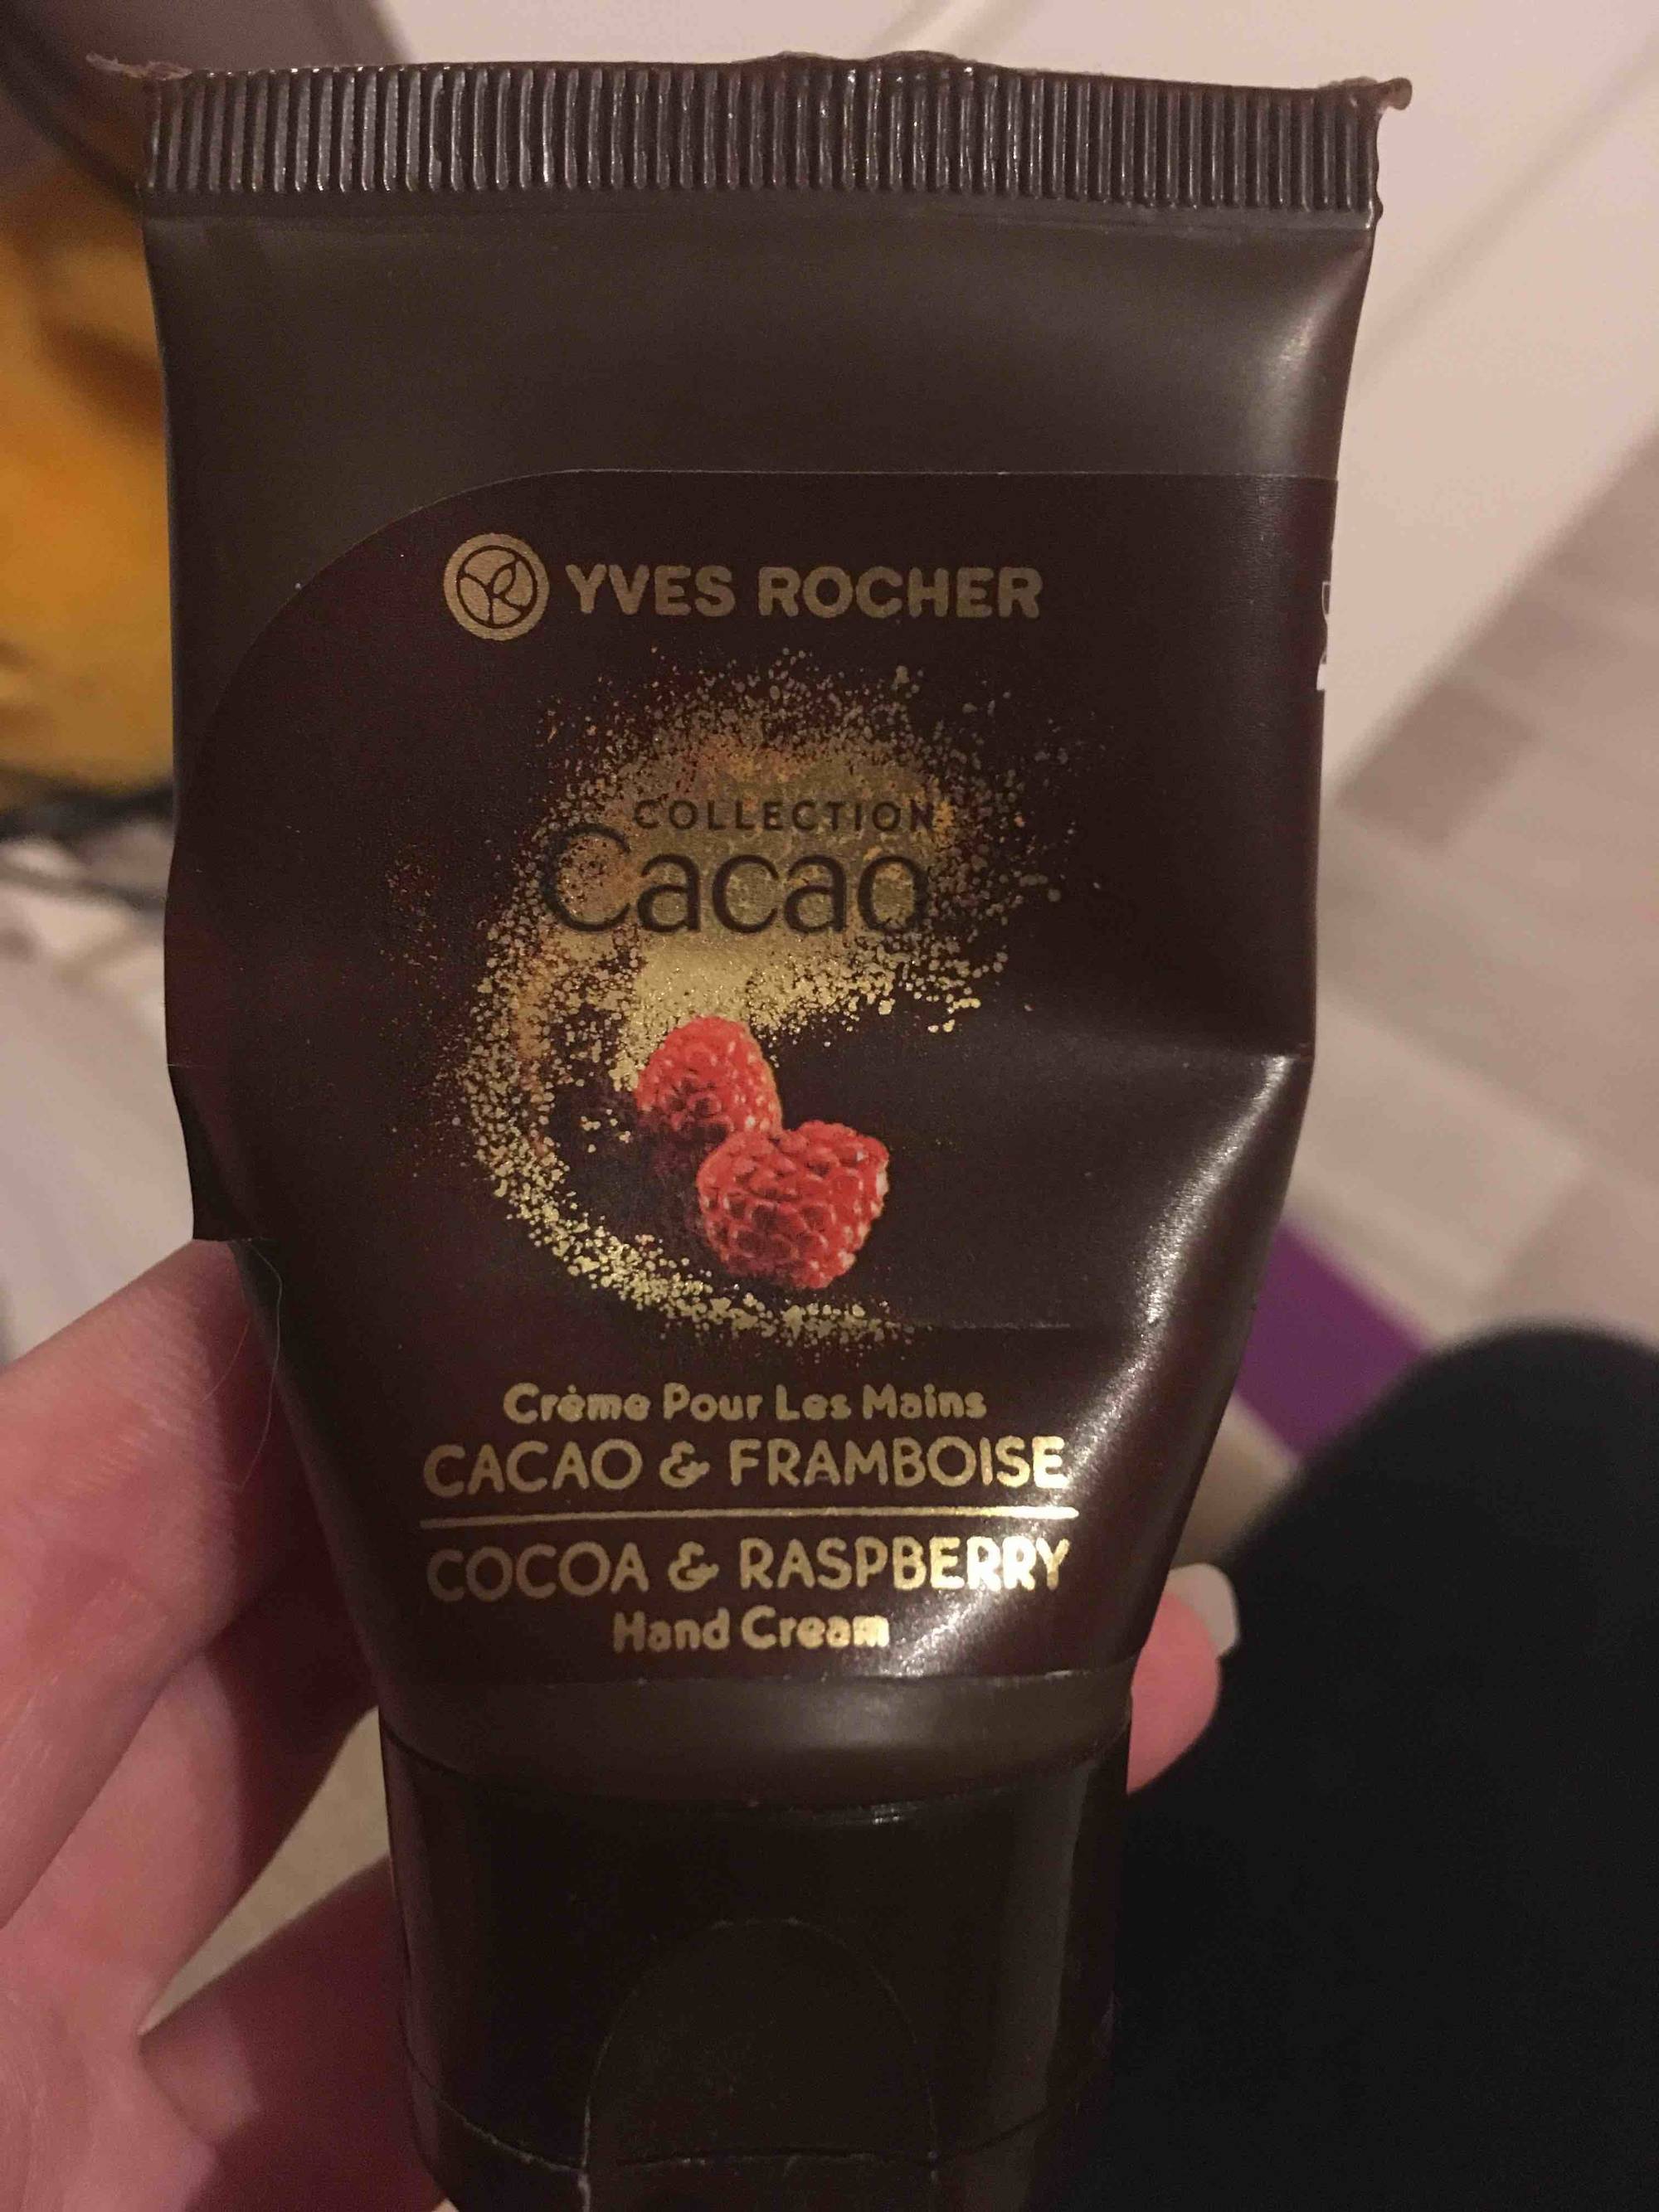 YVES ROCHER - Cacao & Framboise - Crème pour les mains